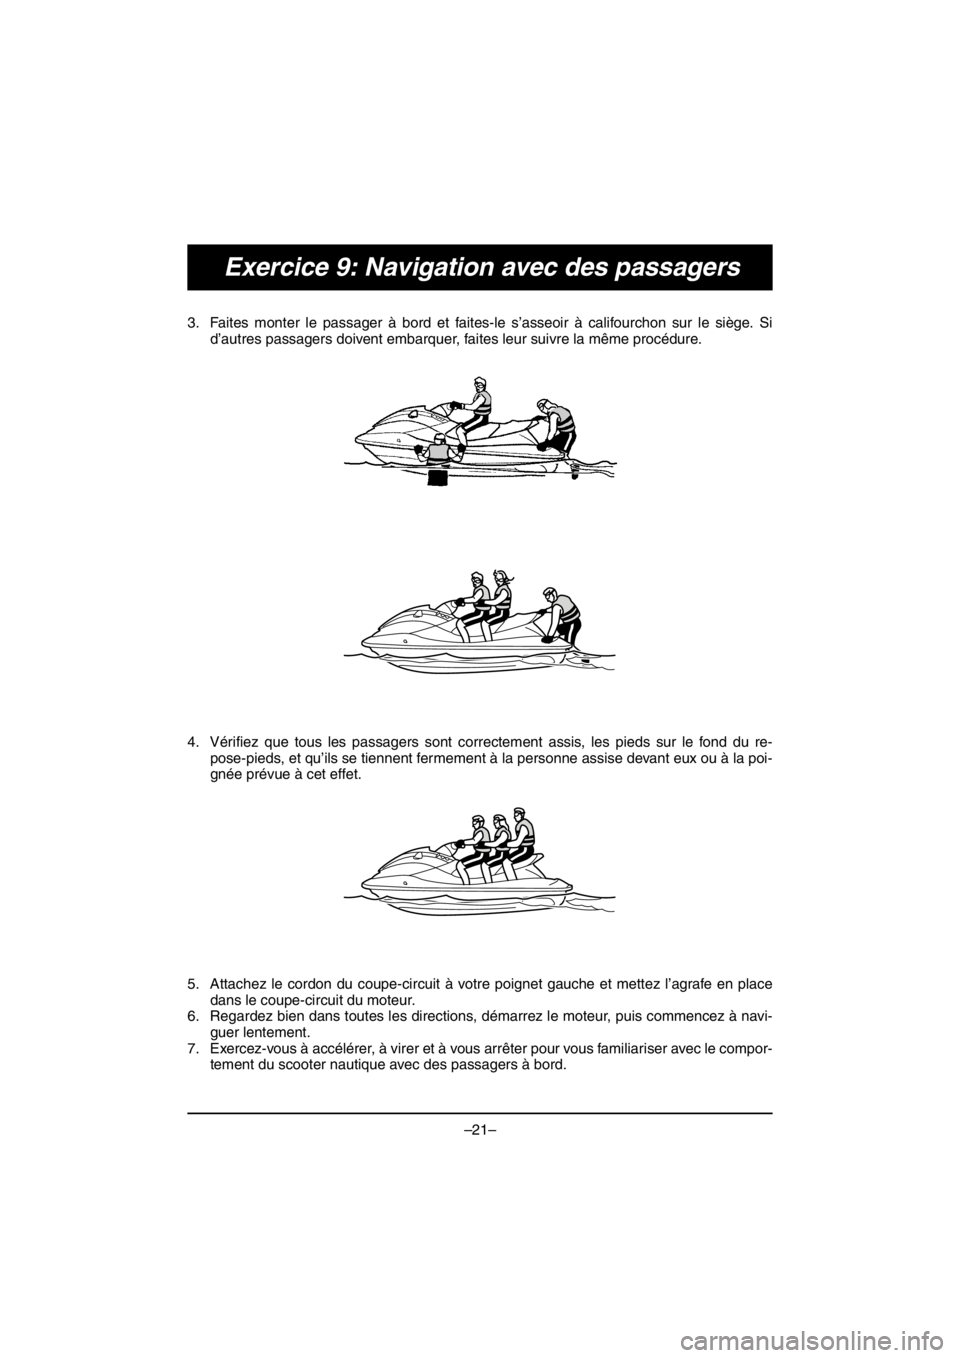 YAMAHA VX DELUXE 2016  Notices Demploi (in French) –21–
Exercice 9: Navigation avec des passagers
3. Faites monter le passager à bord et faites-le s’asseoir à califourchon sur le siège. Si
d’autres passagers doivent embarquer, faites leur s